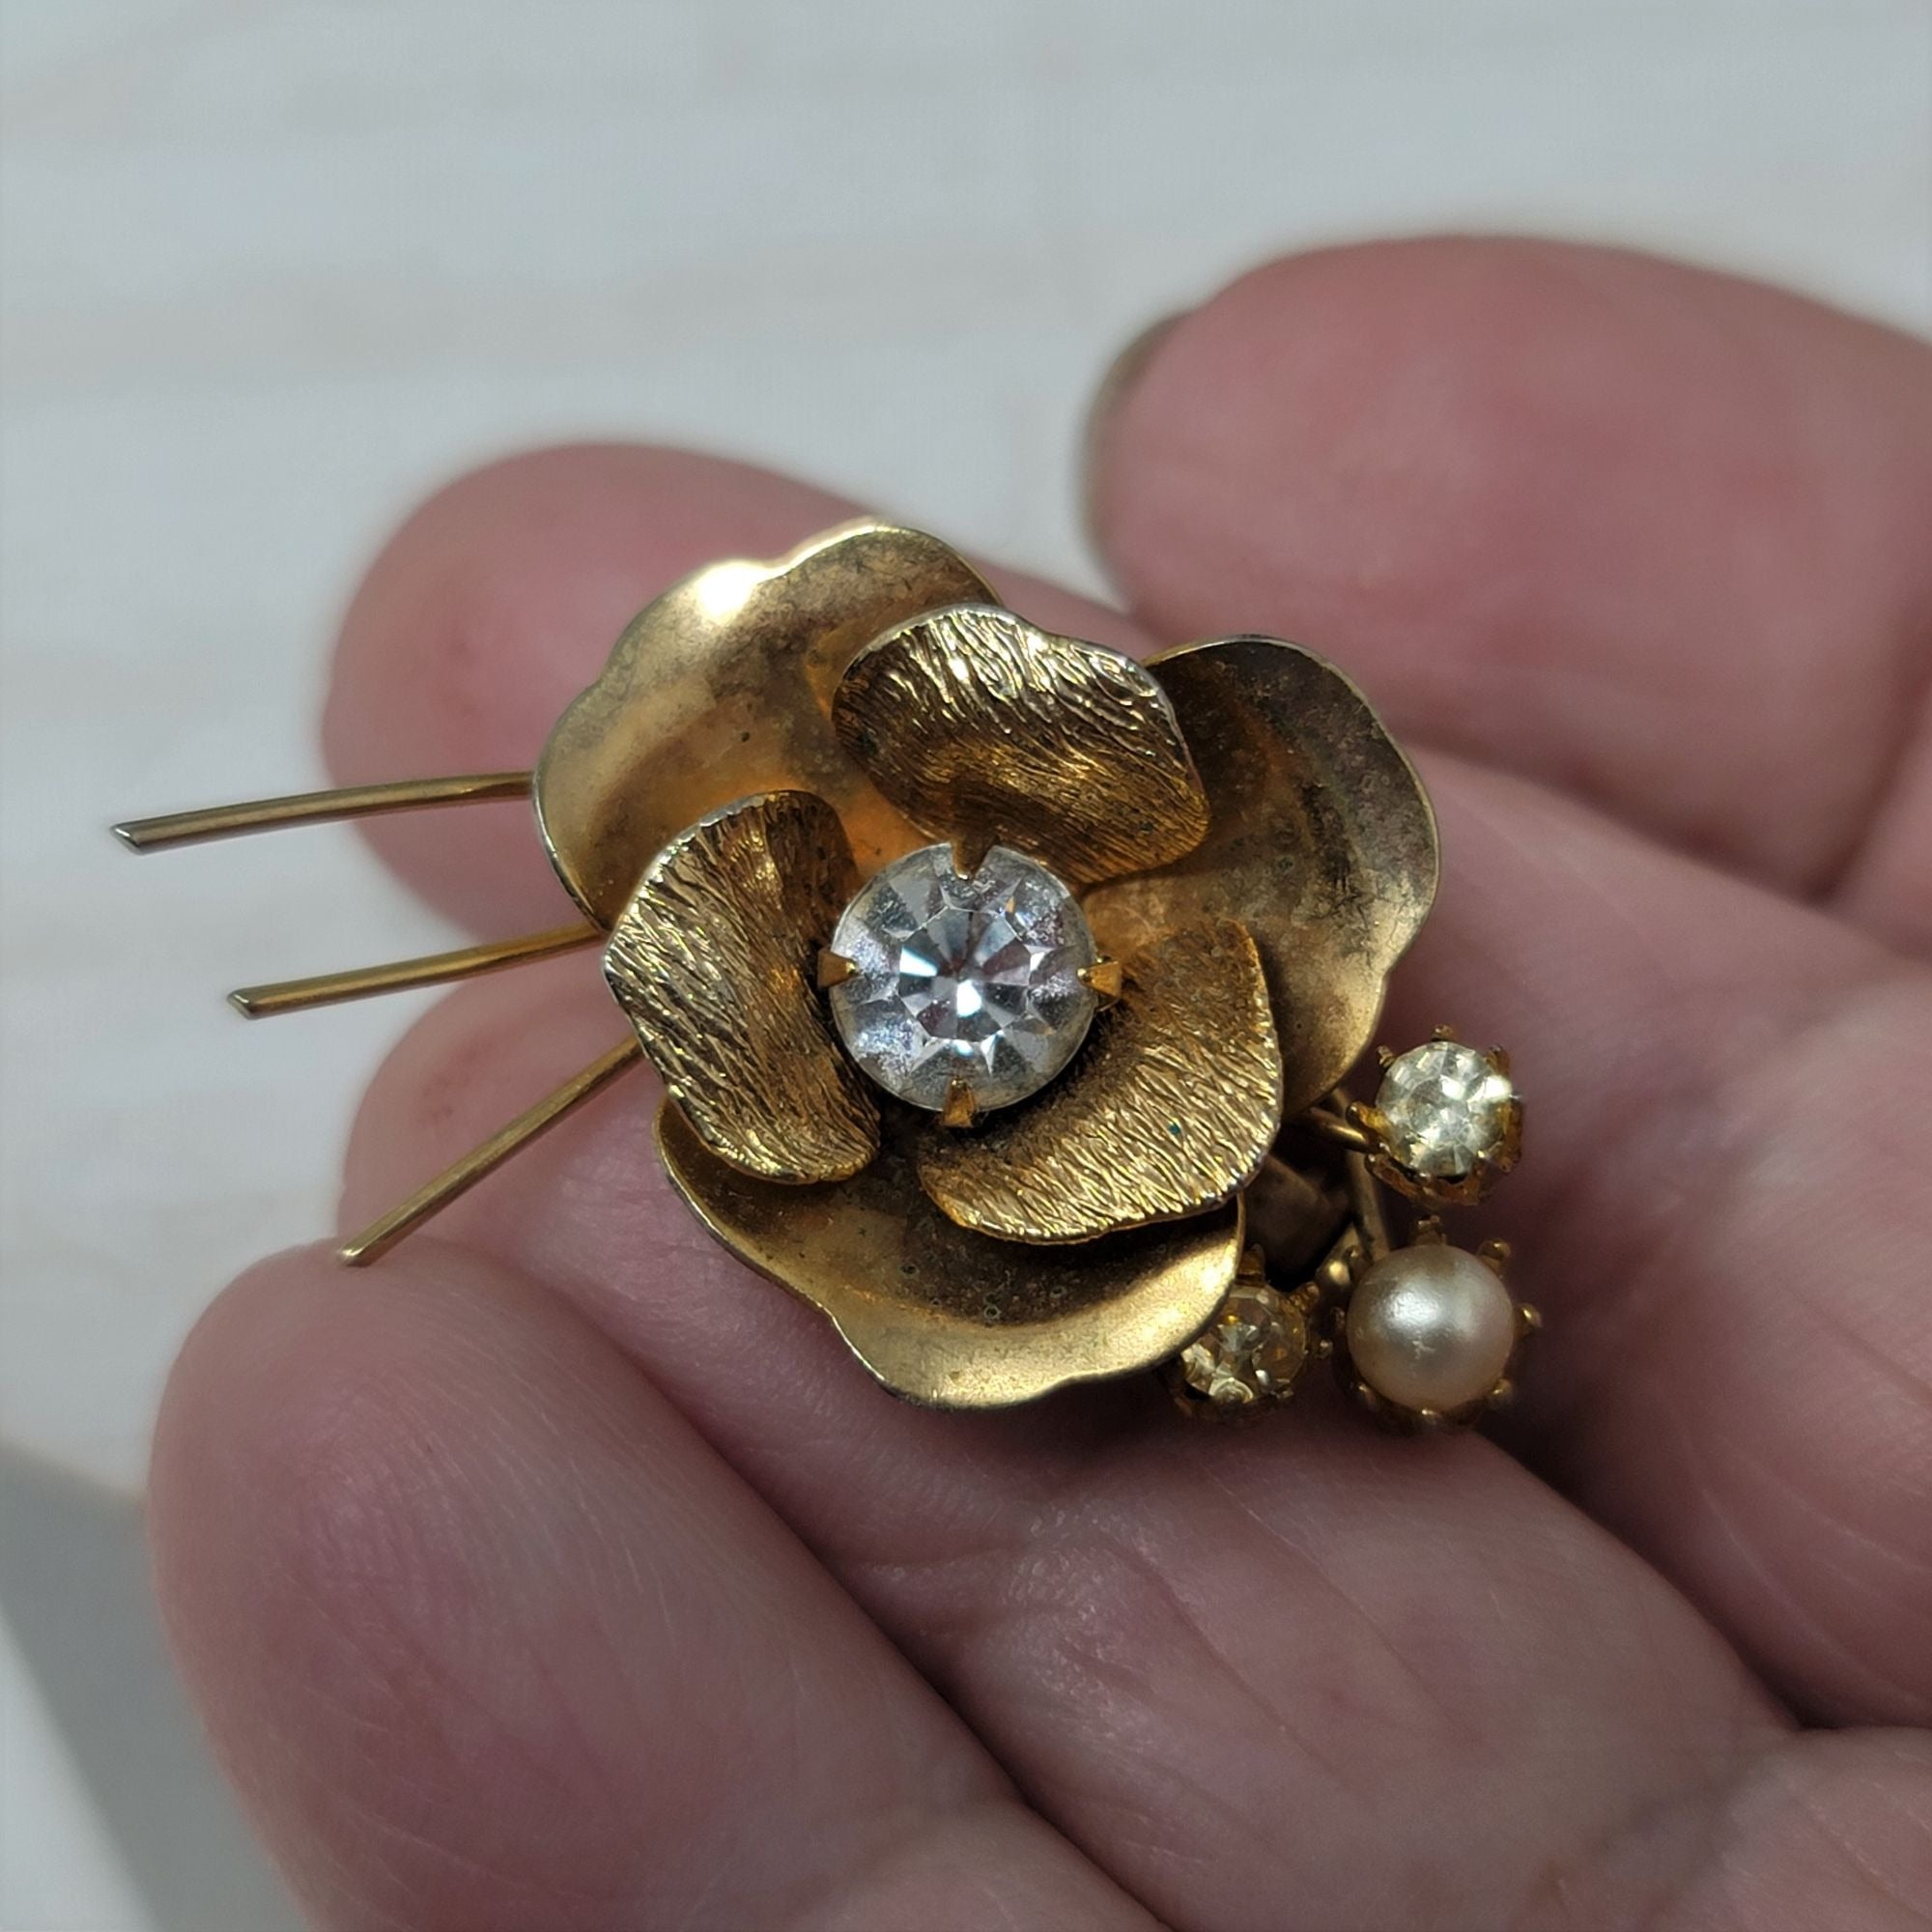 Delicate Vintage Flower Brooch Pin Rhinestone & Pearl